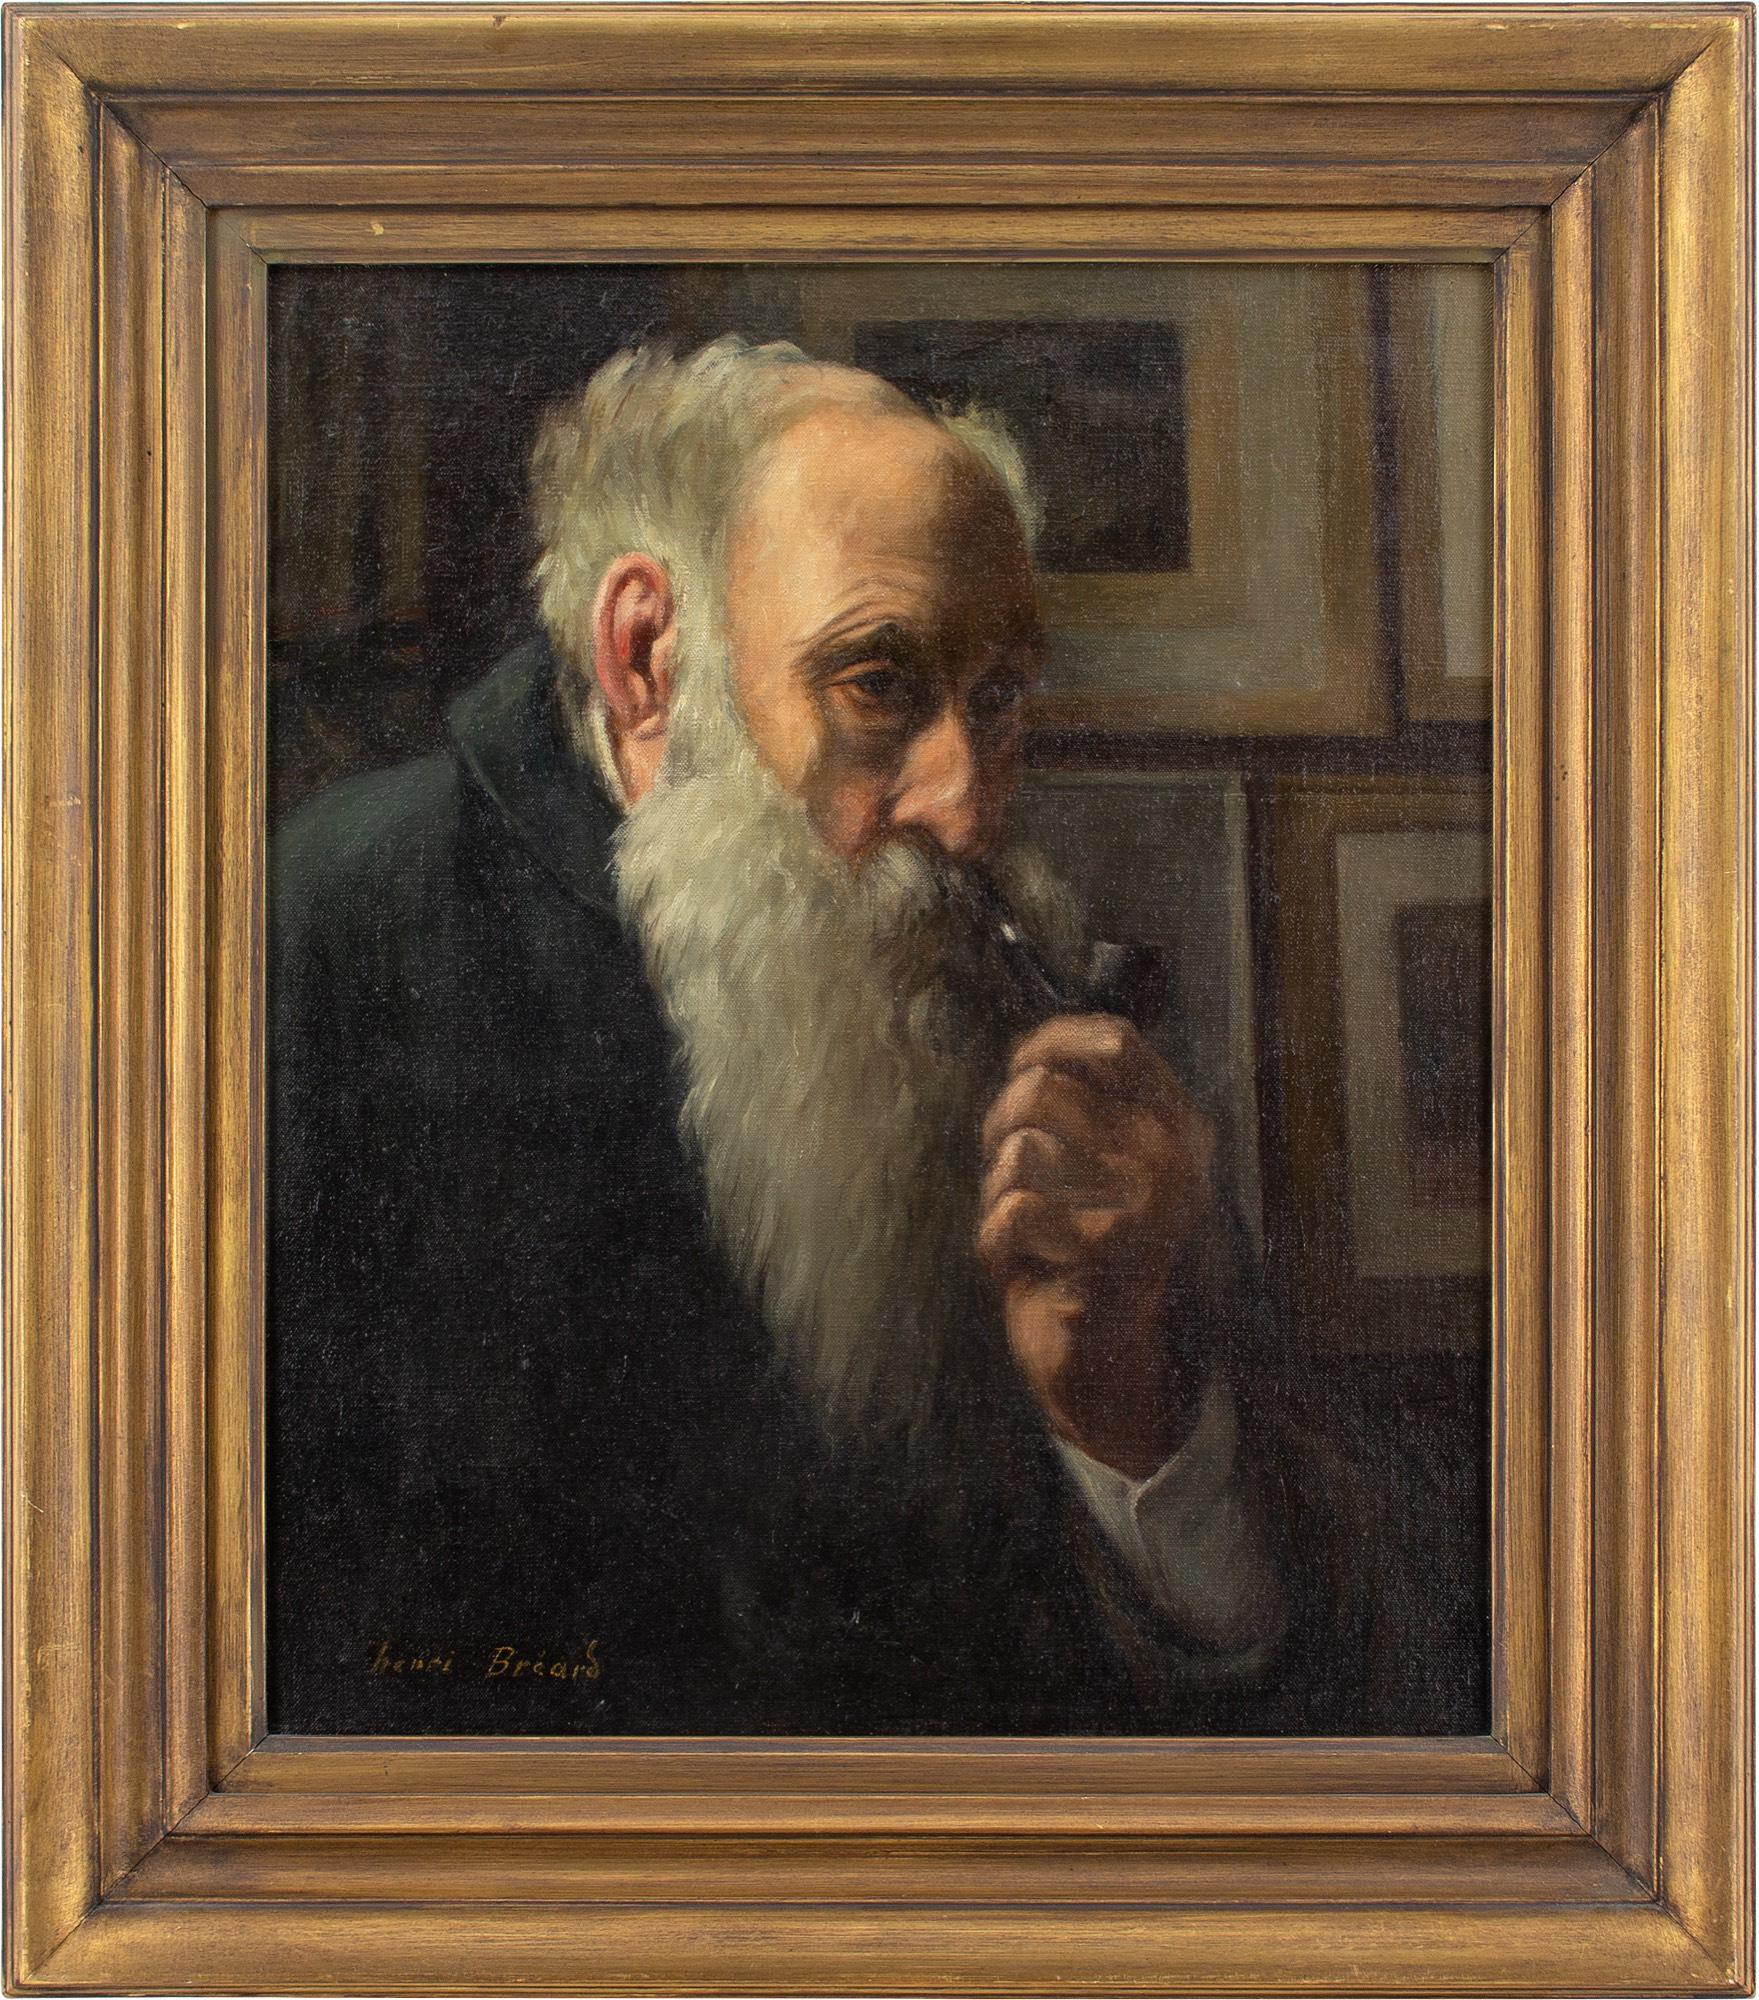 Dieses Selbstporträt von Henri-Georges Bréard (1873-c.1939) aus der Mitte des 20. Jahrhunderts zeigt den Künstler in Gedanken versunken. Er hält eine Pfeife in der Hand.

Henri-Georges Bréard war ein bedeutender französischer Maler von Landschaften,